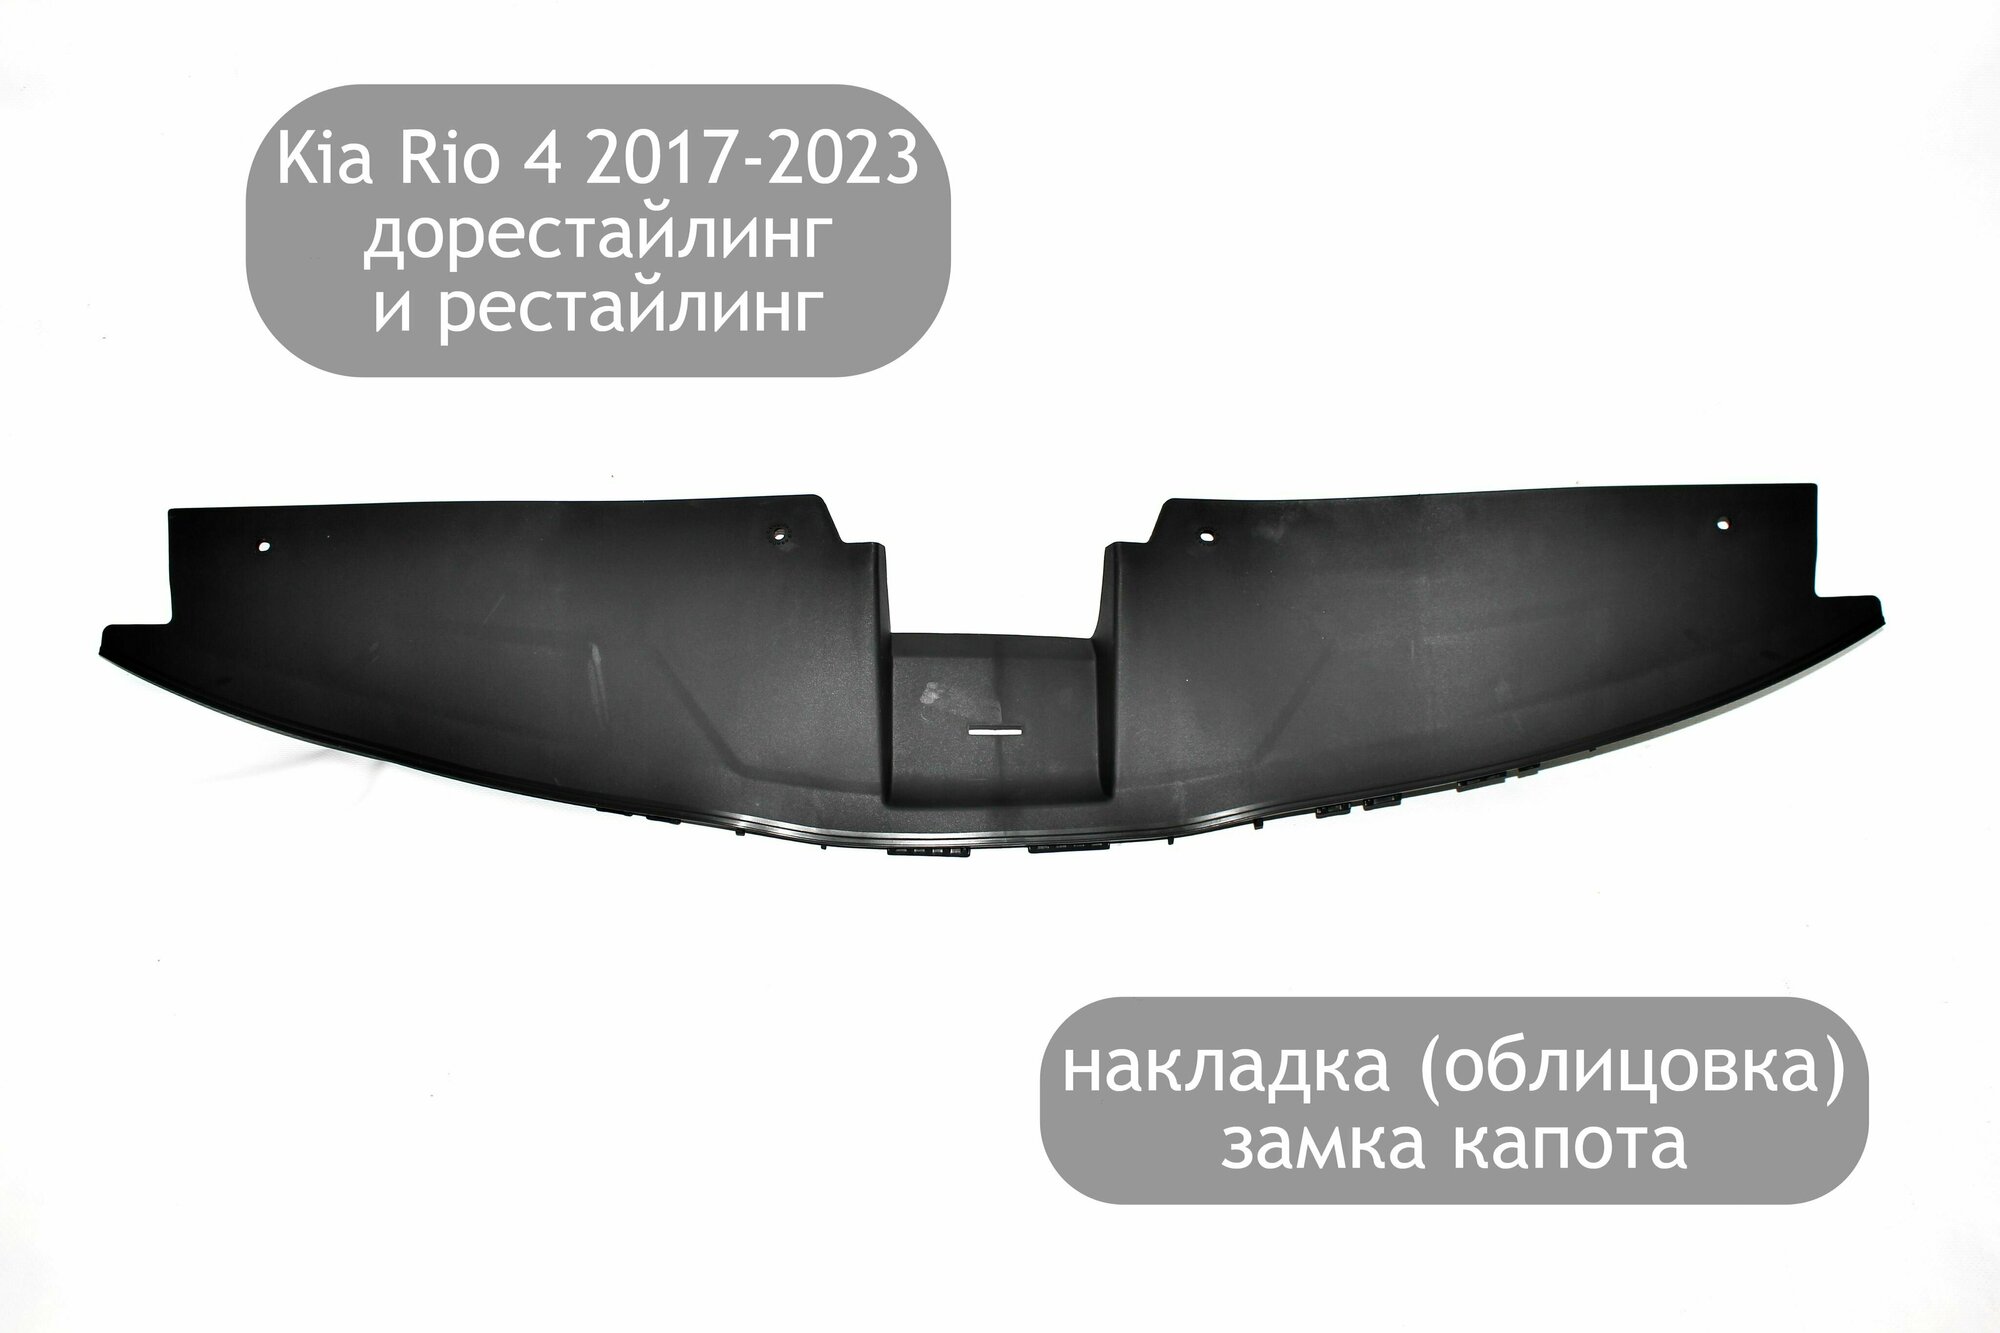 Накладка (облицовка) на верх переднего бампера для Kia Rio 4 2017-2023 (дорестайлинг и рестайлинг) накладка замка капота Киа Рио 4